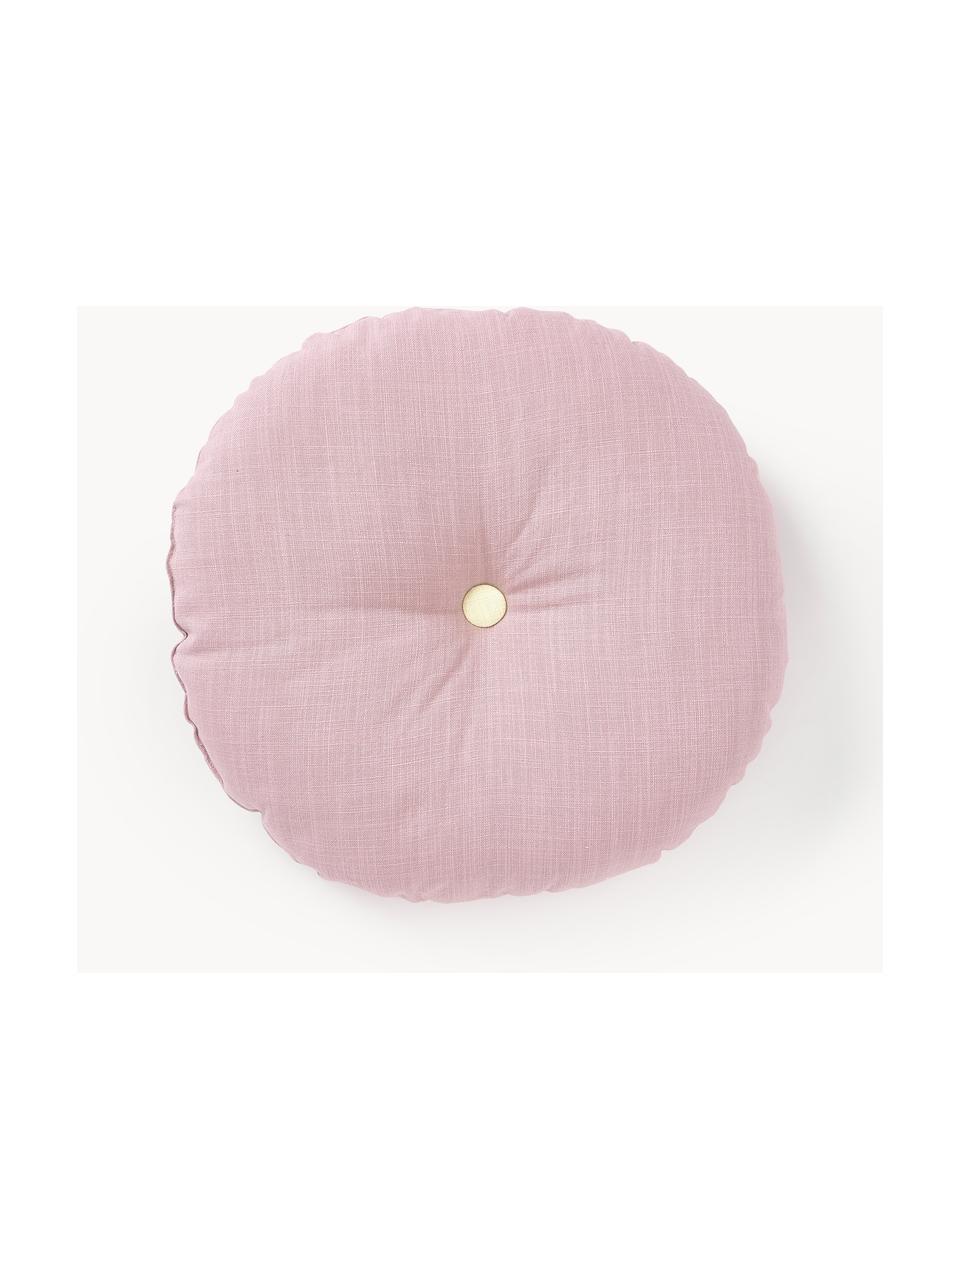 Okrągła poduszka dekoracyjna Devi, Tapicerka: 100% bawełna, Blady różowy, lila, Ø 35 cm